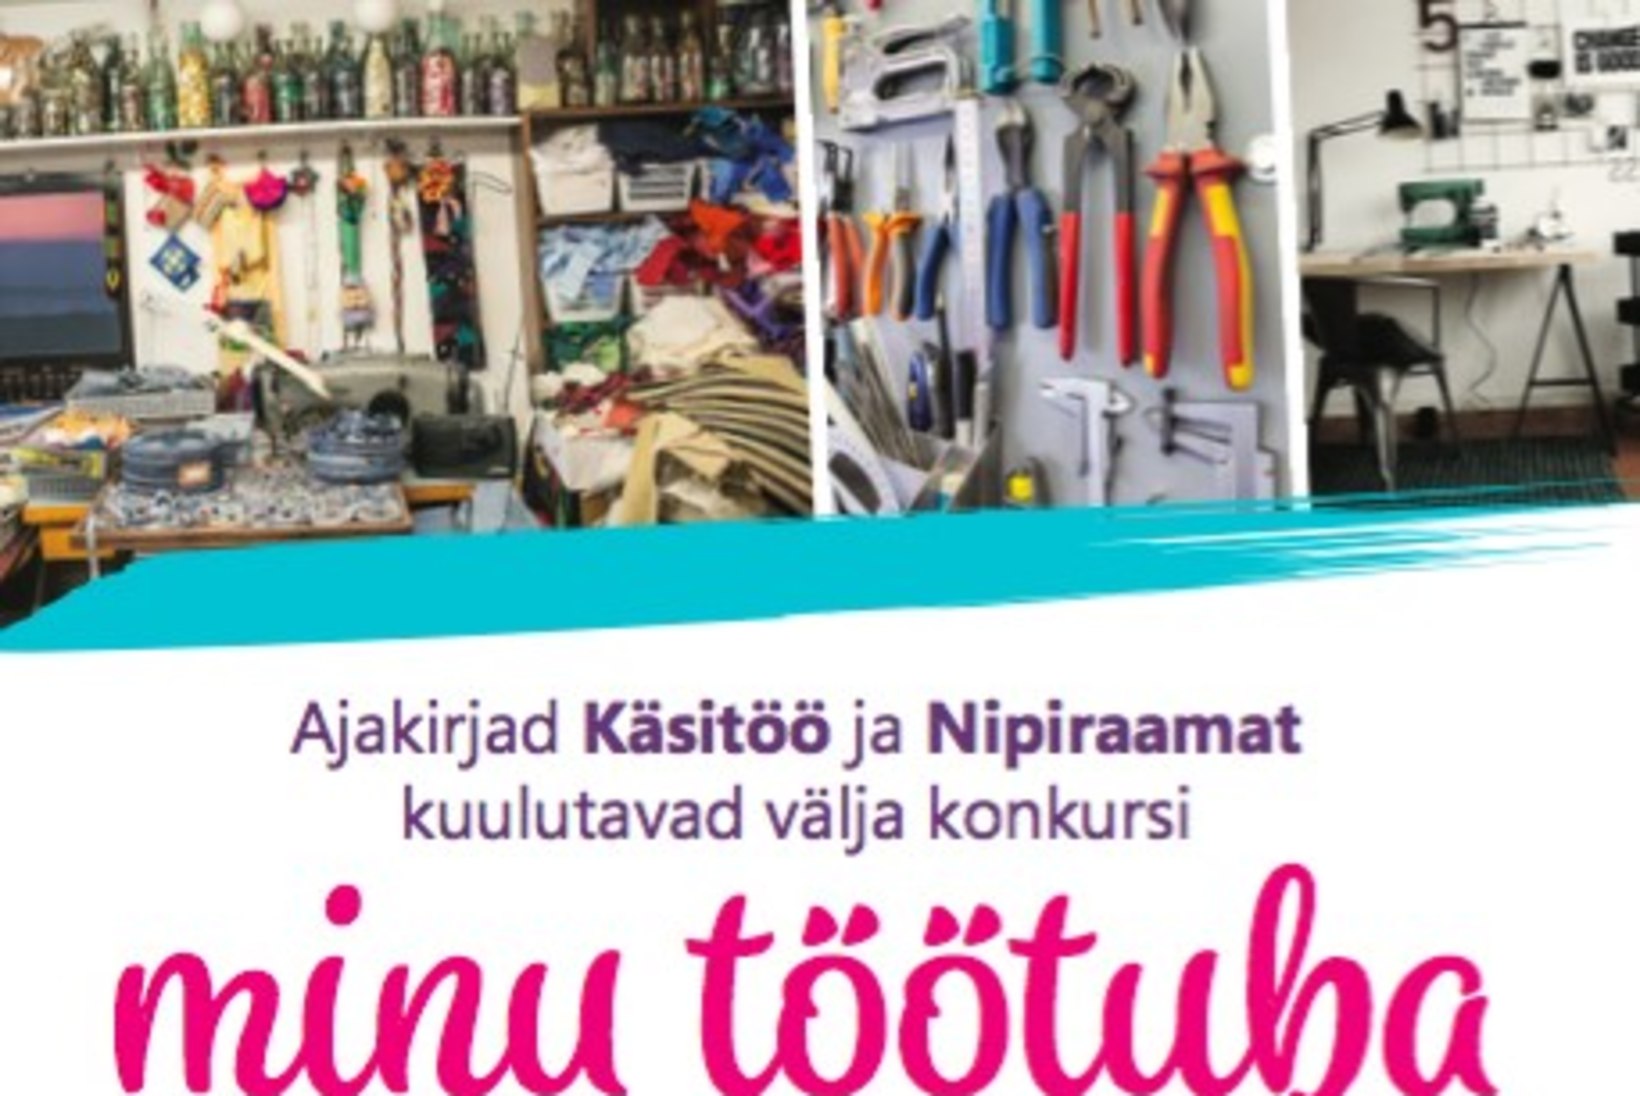 Ajakirjad Käsitöö ja Nipiraamat kuulutavad välja konkursi "Minu töötuba"